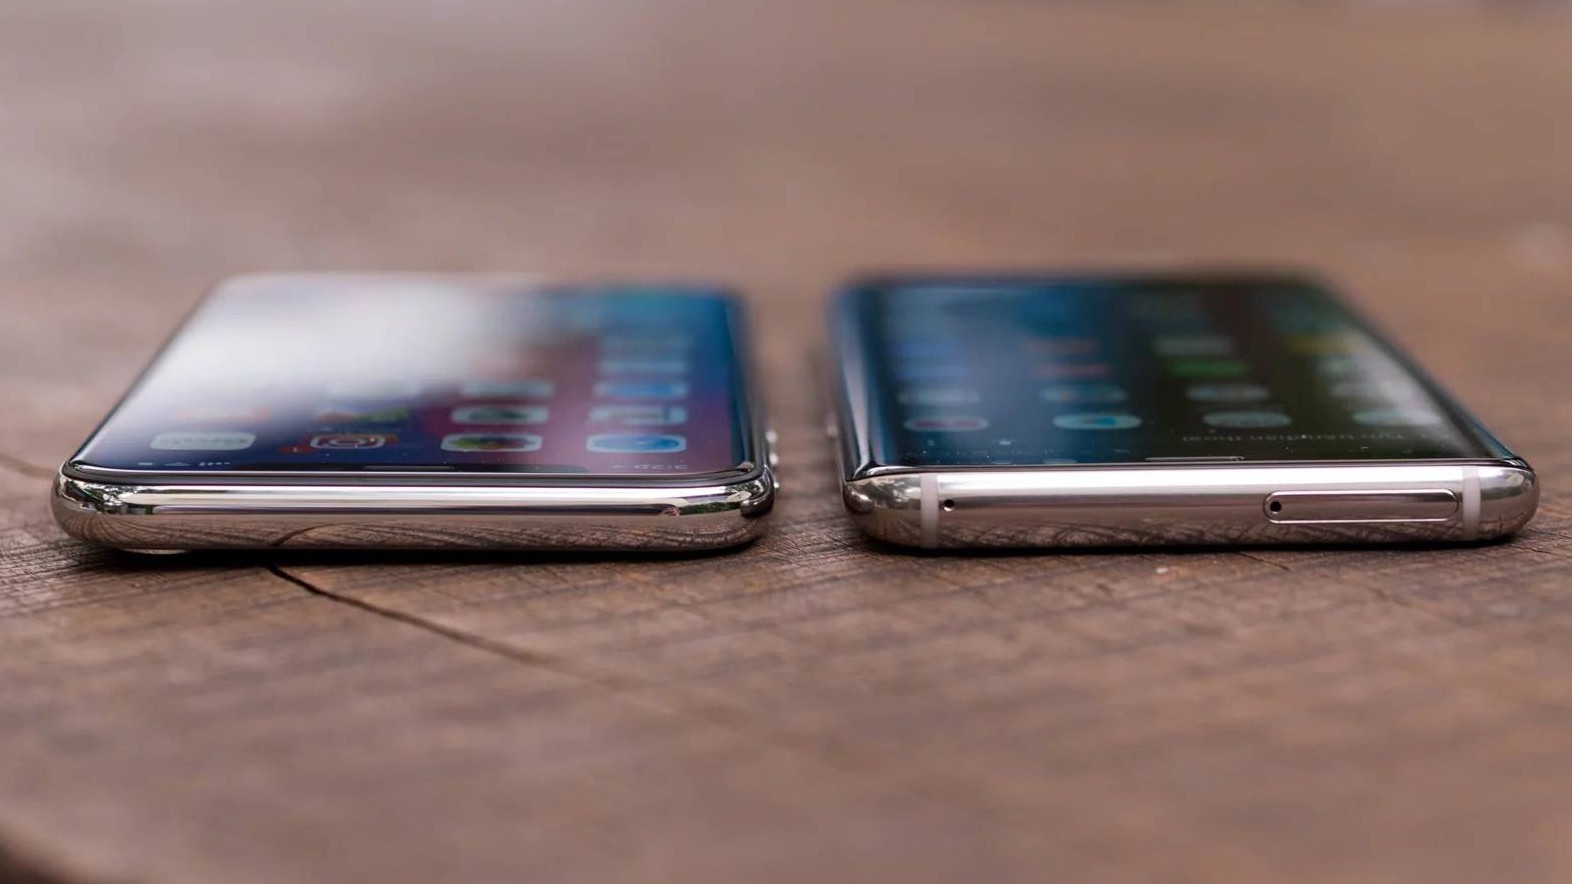 Samsung Galaxy S8 vs iPhone X